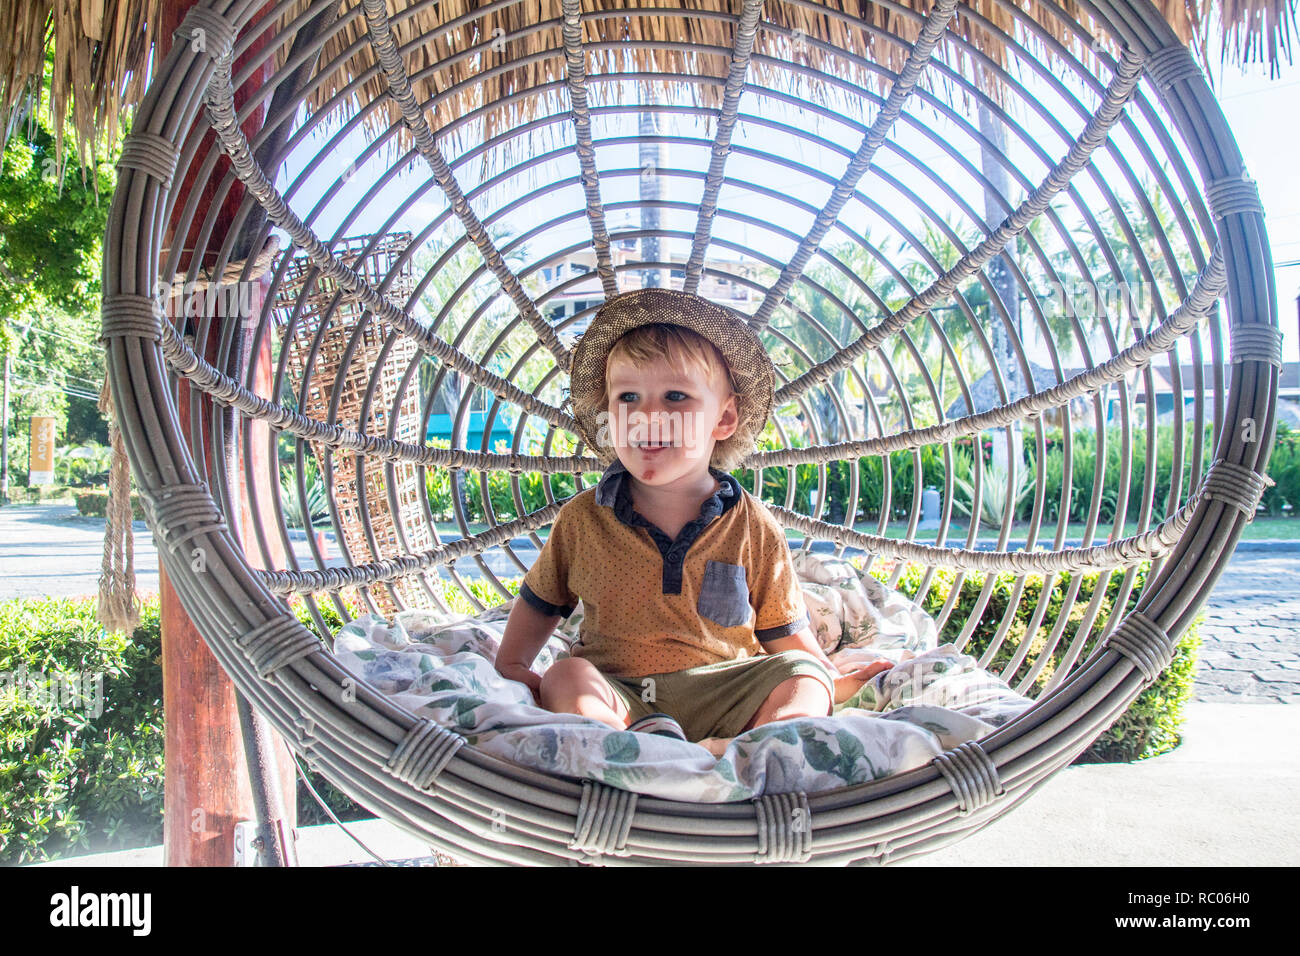 Ein Portrait eines Jungen mit einem Hut glücklich in einem schönen Garten Schaukel Stuhl Stockfoto